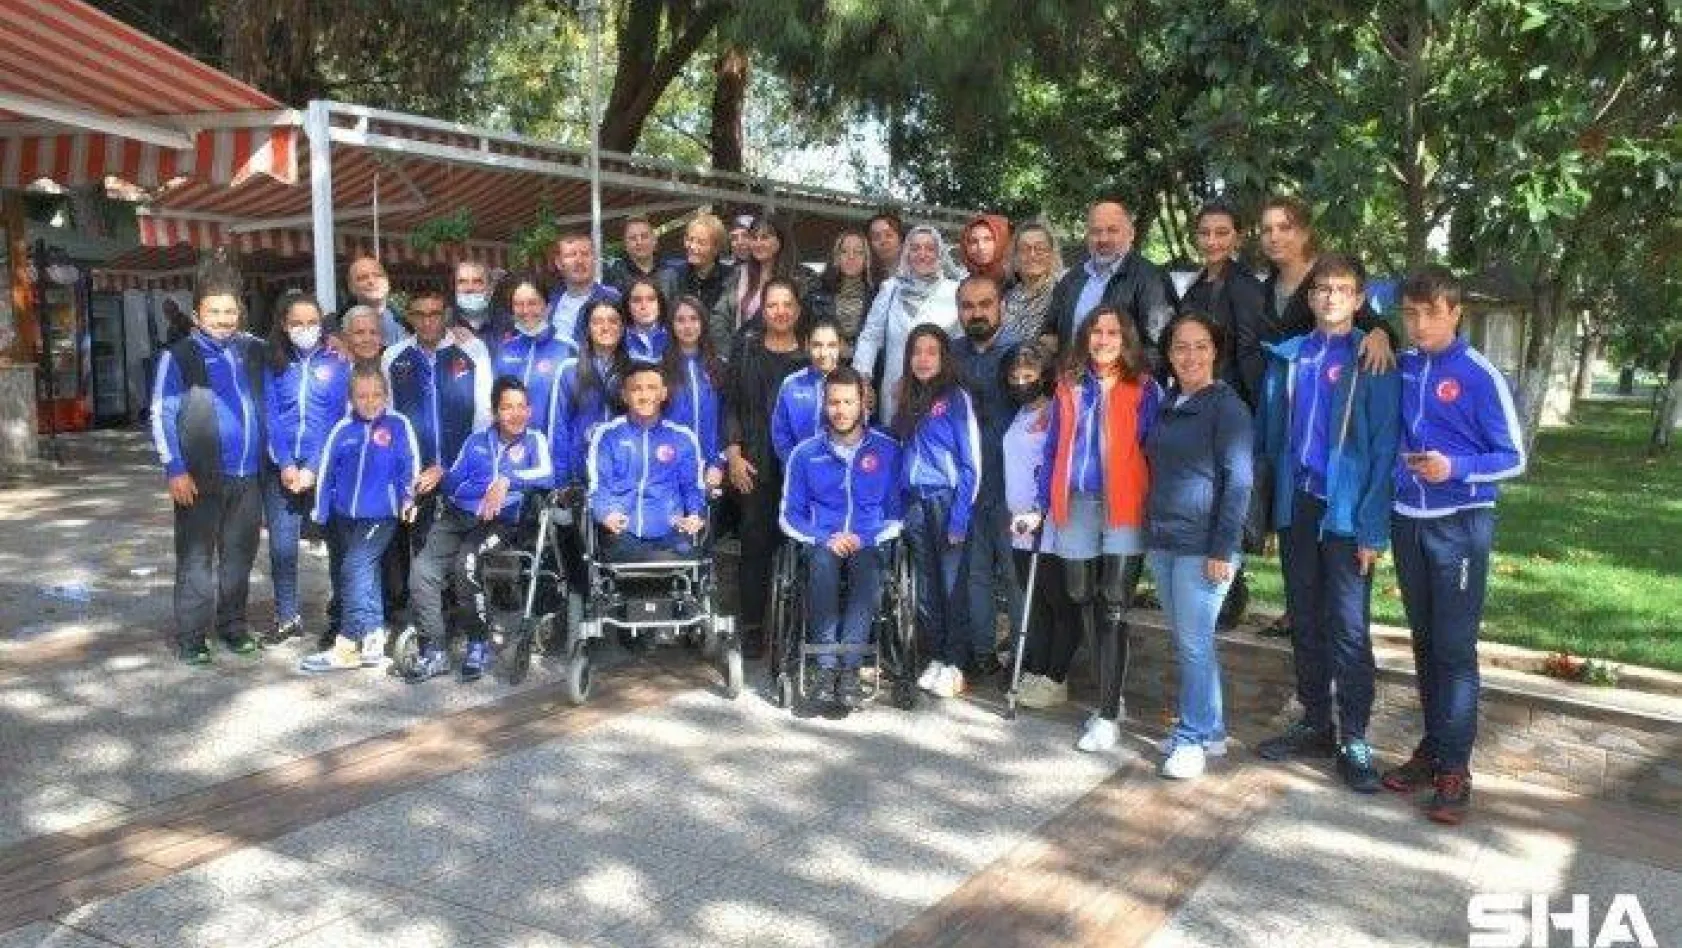 Silivri Belediyesi Paralimpik Şampiyonları Ağırladı